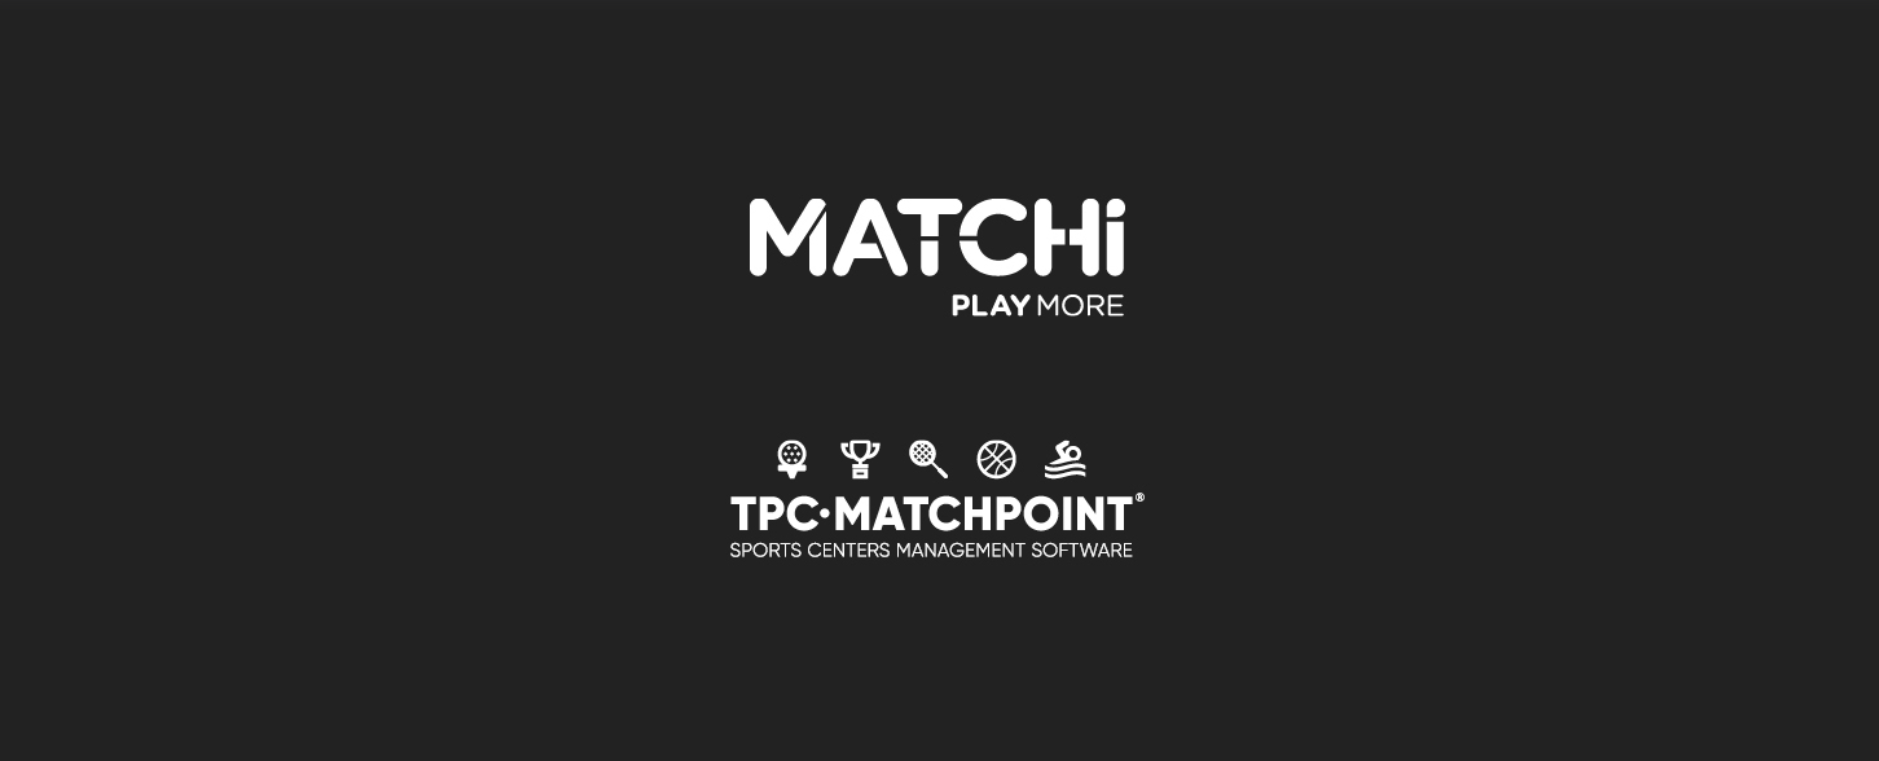 TPC Matchpoint samarbetar med MATCHi och skapar ett av världens största racketsportnätverk!